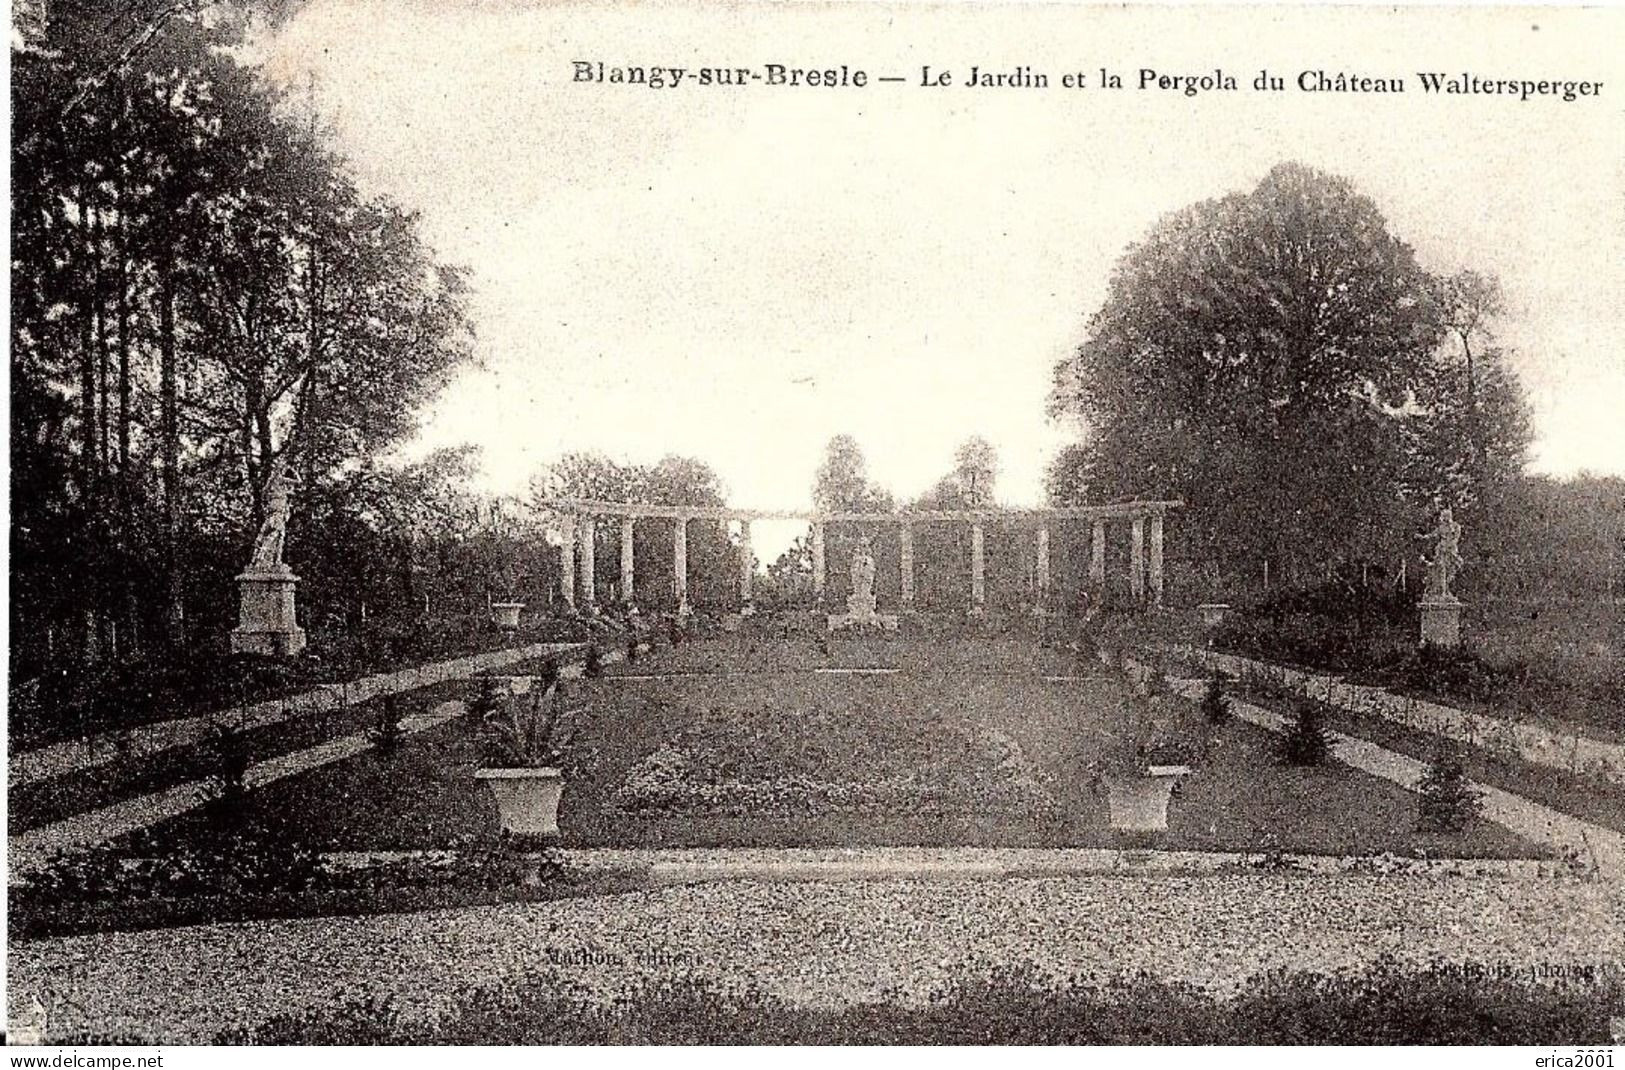 Blangy-sur-Bresle. Le Jardin Et La Pergola Du Chateau Waltersperger. - Blangy-sur-Bresle